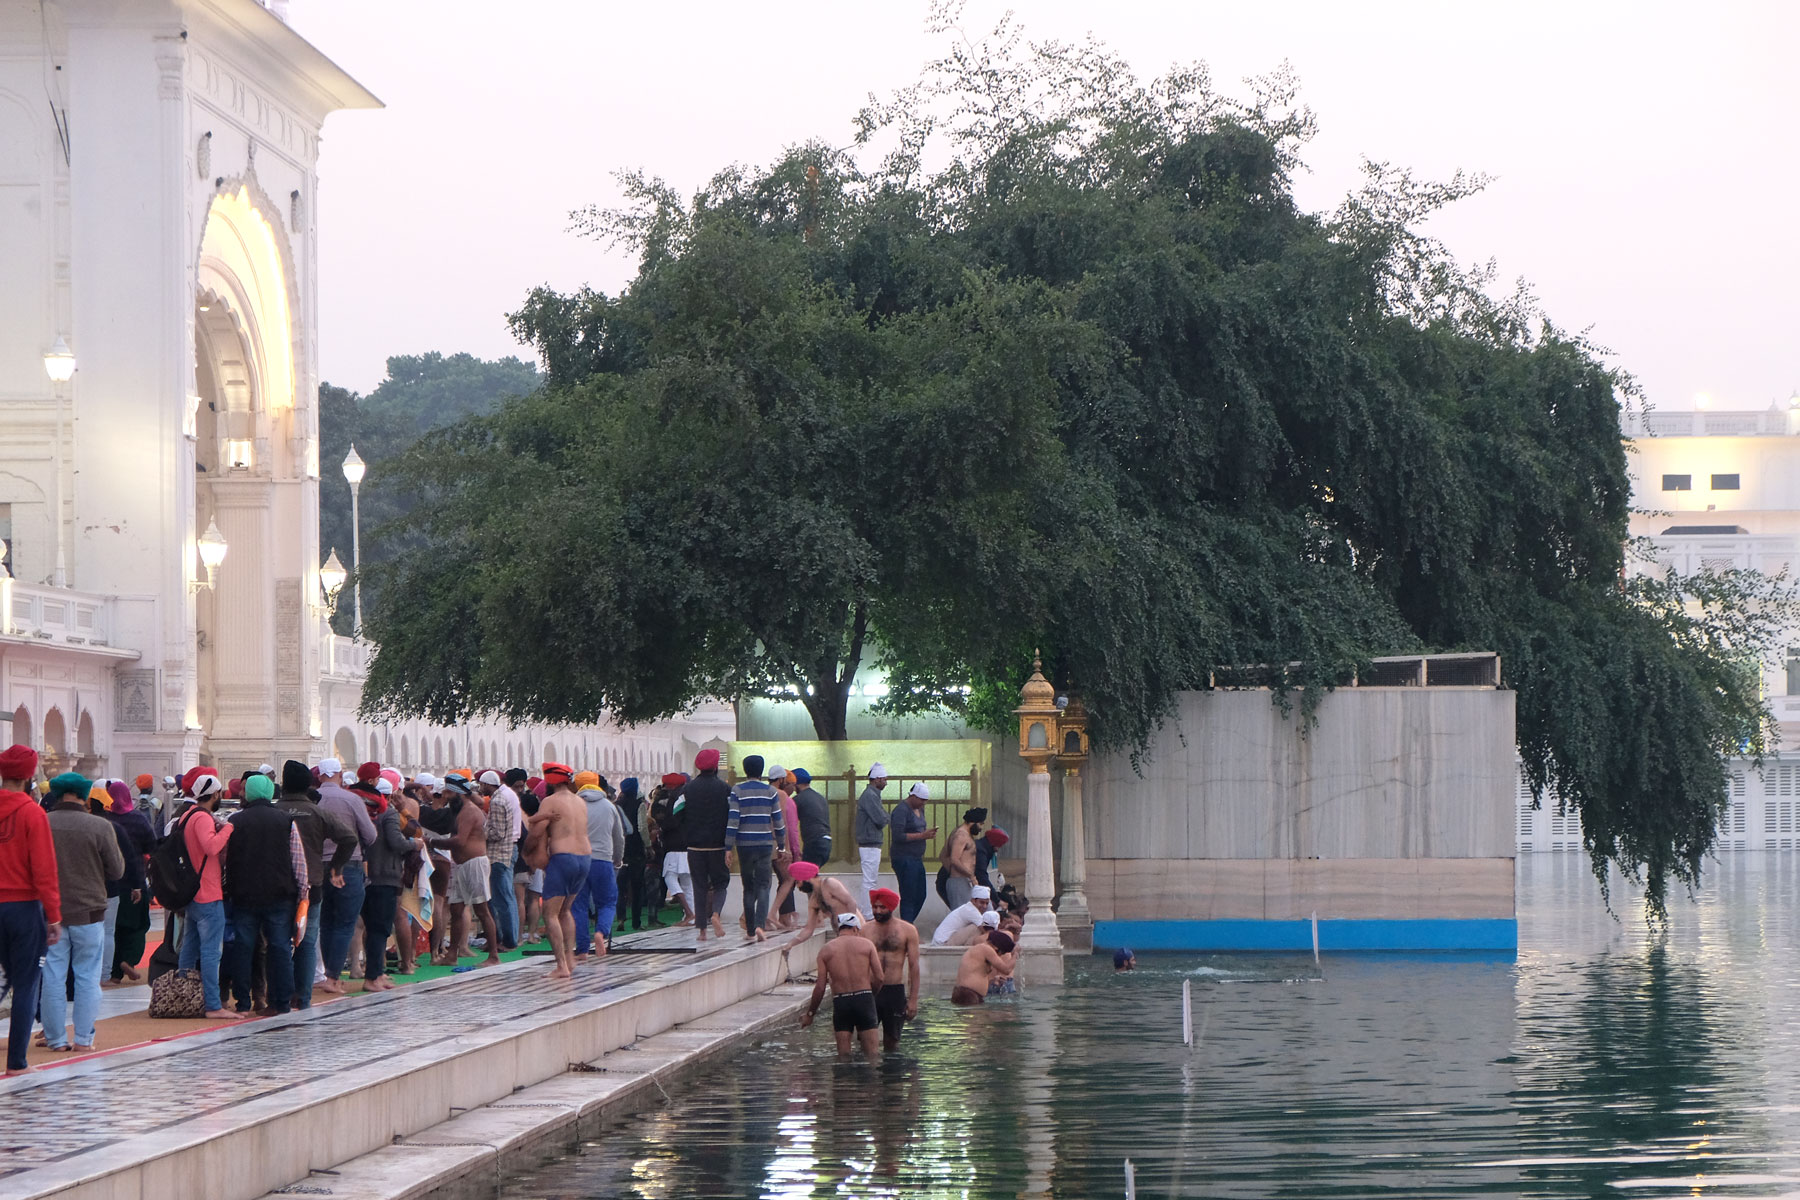 Männer baden im heiligen Wasser des Sikh-Tempels in Amritsar.